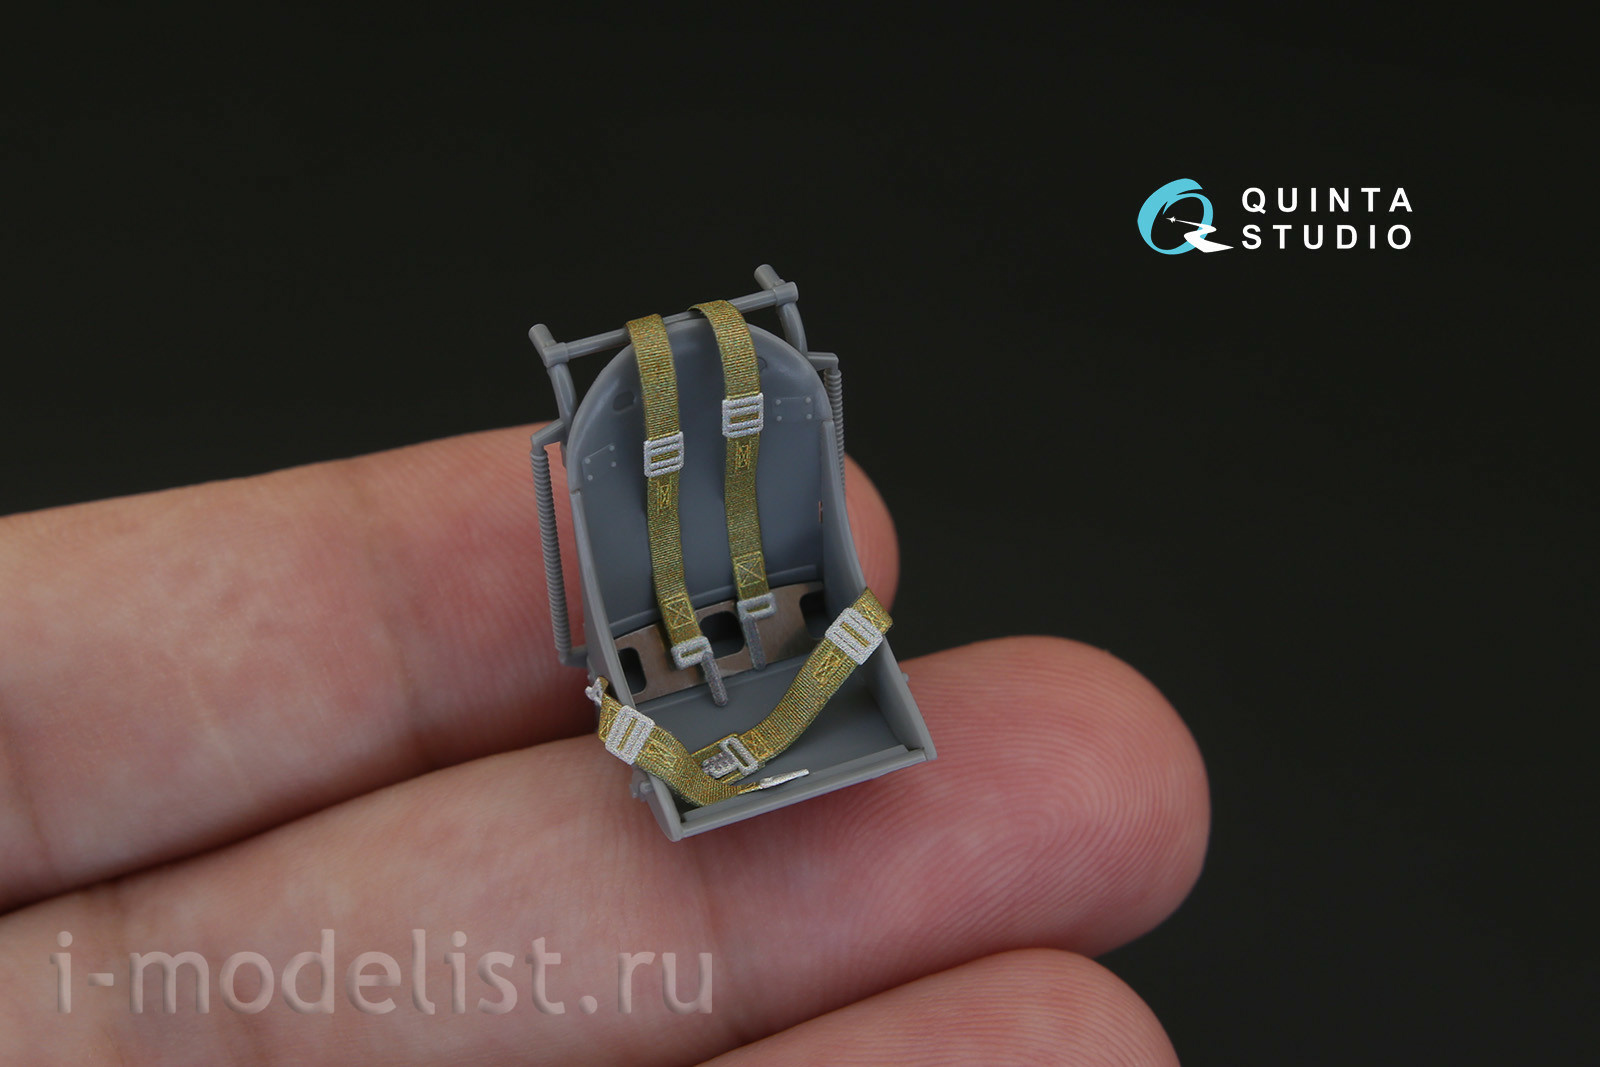 QD32015 Quinta Studio 1/32 3D Декаль интерьера кабины F4U-1 Corsair (Bird cage) (для модели Tamiya)